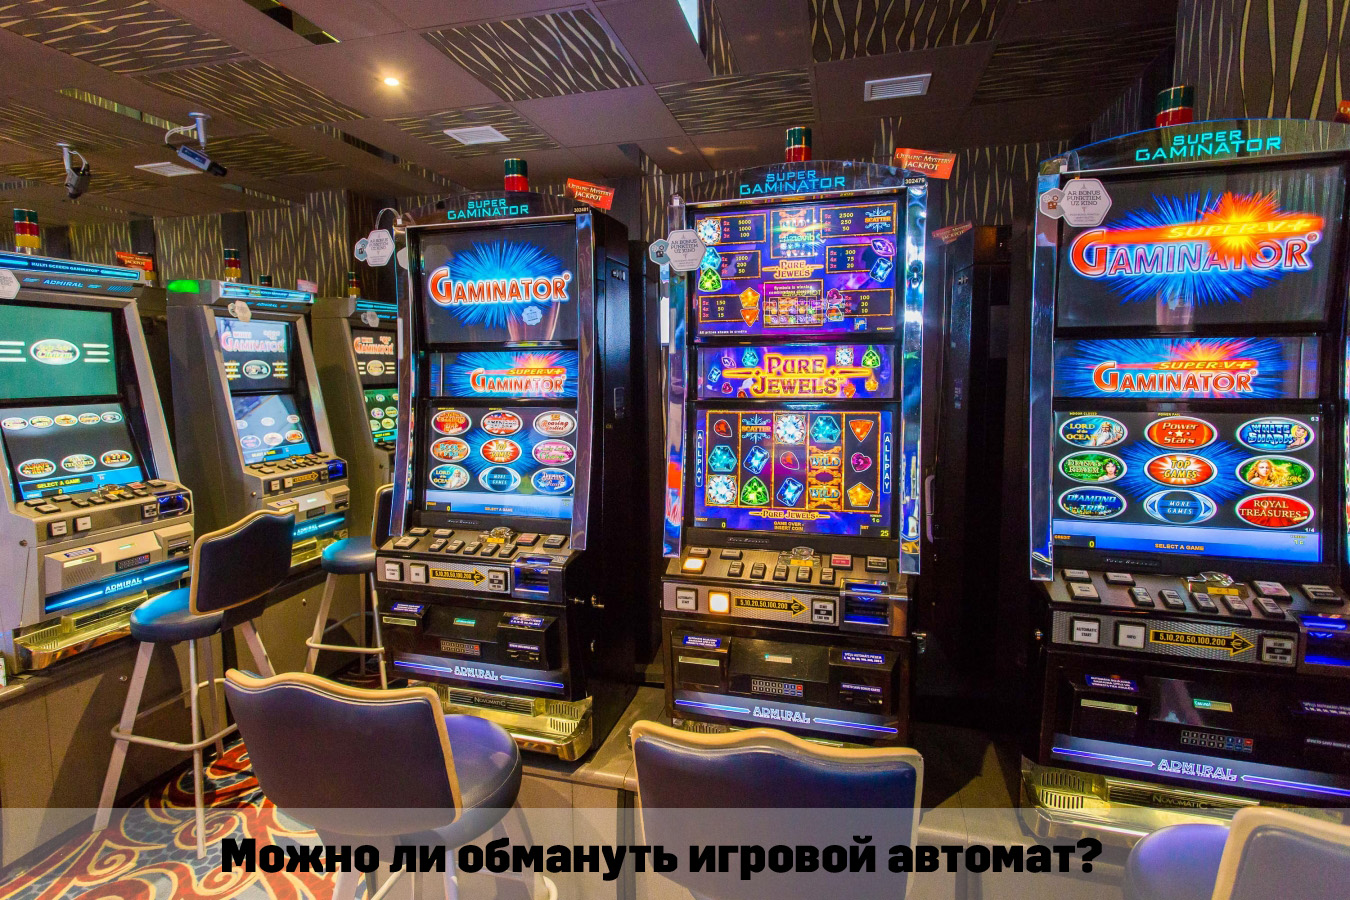 Можно ли обмануть игровые автоматы читы сампа на казино